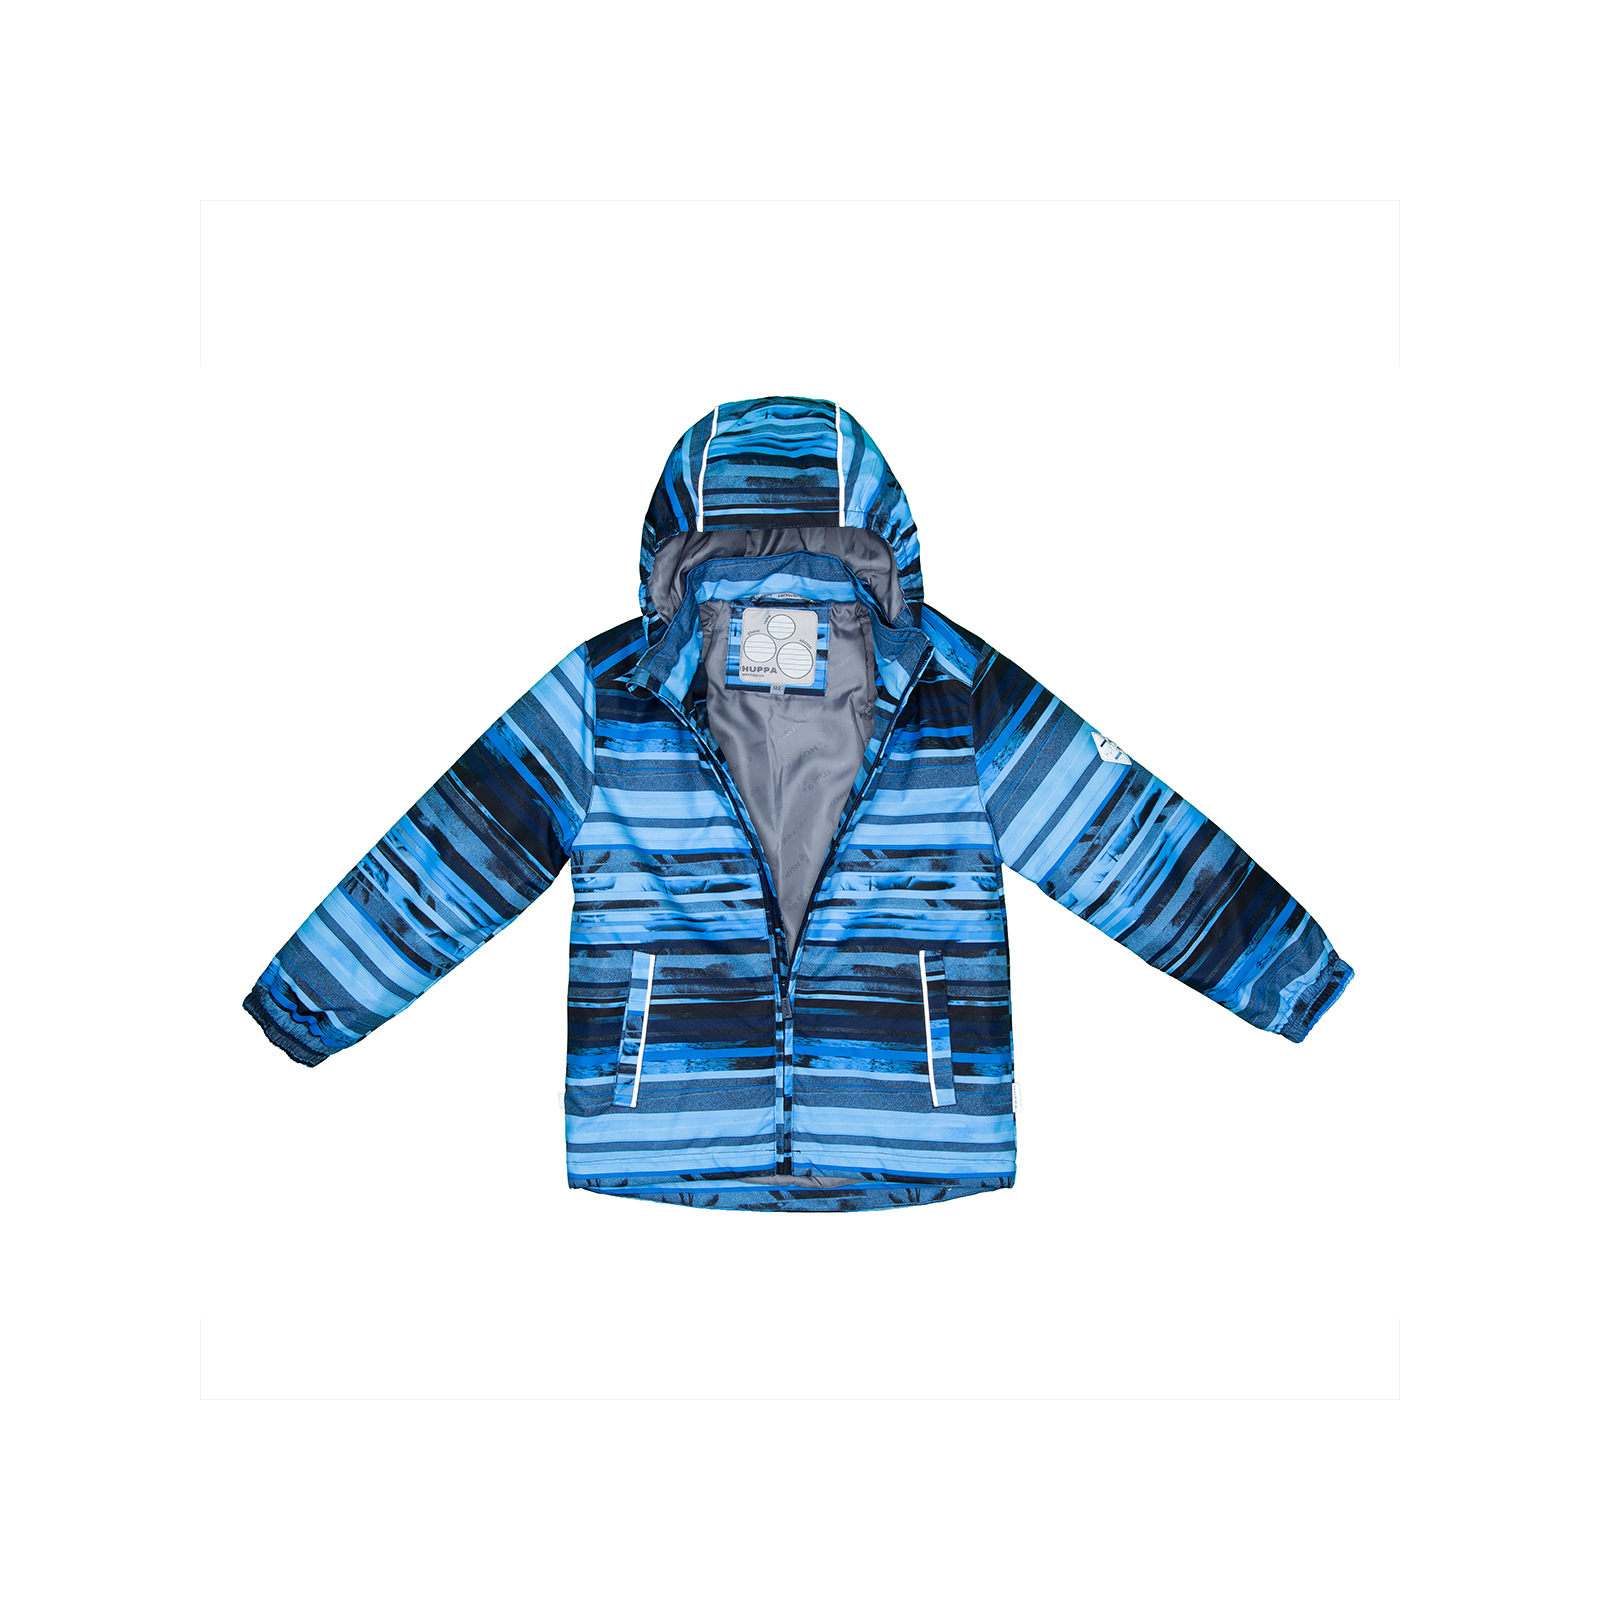 Комплект верхней одежды Huppa YOKO-1 41190014 синий с принтом/тёмно-синий 92 (4741468760452) изображение 5